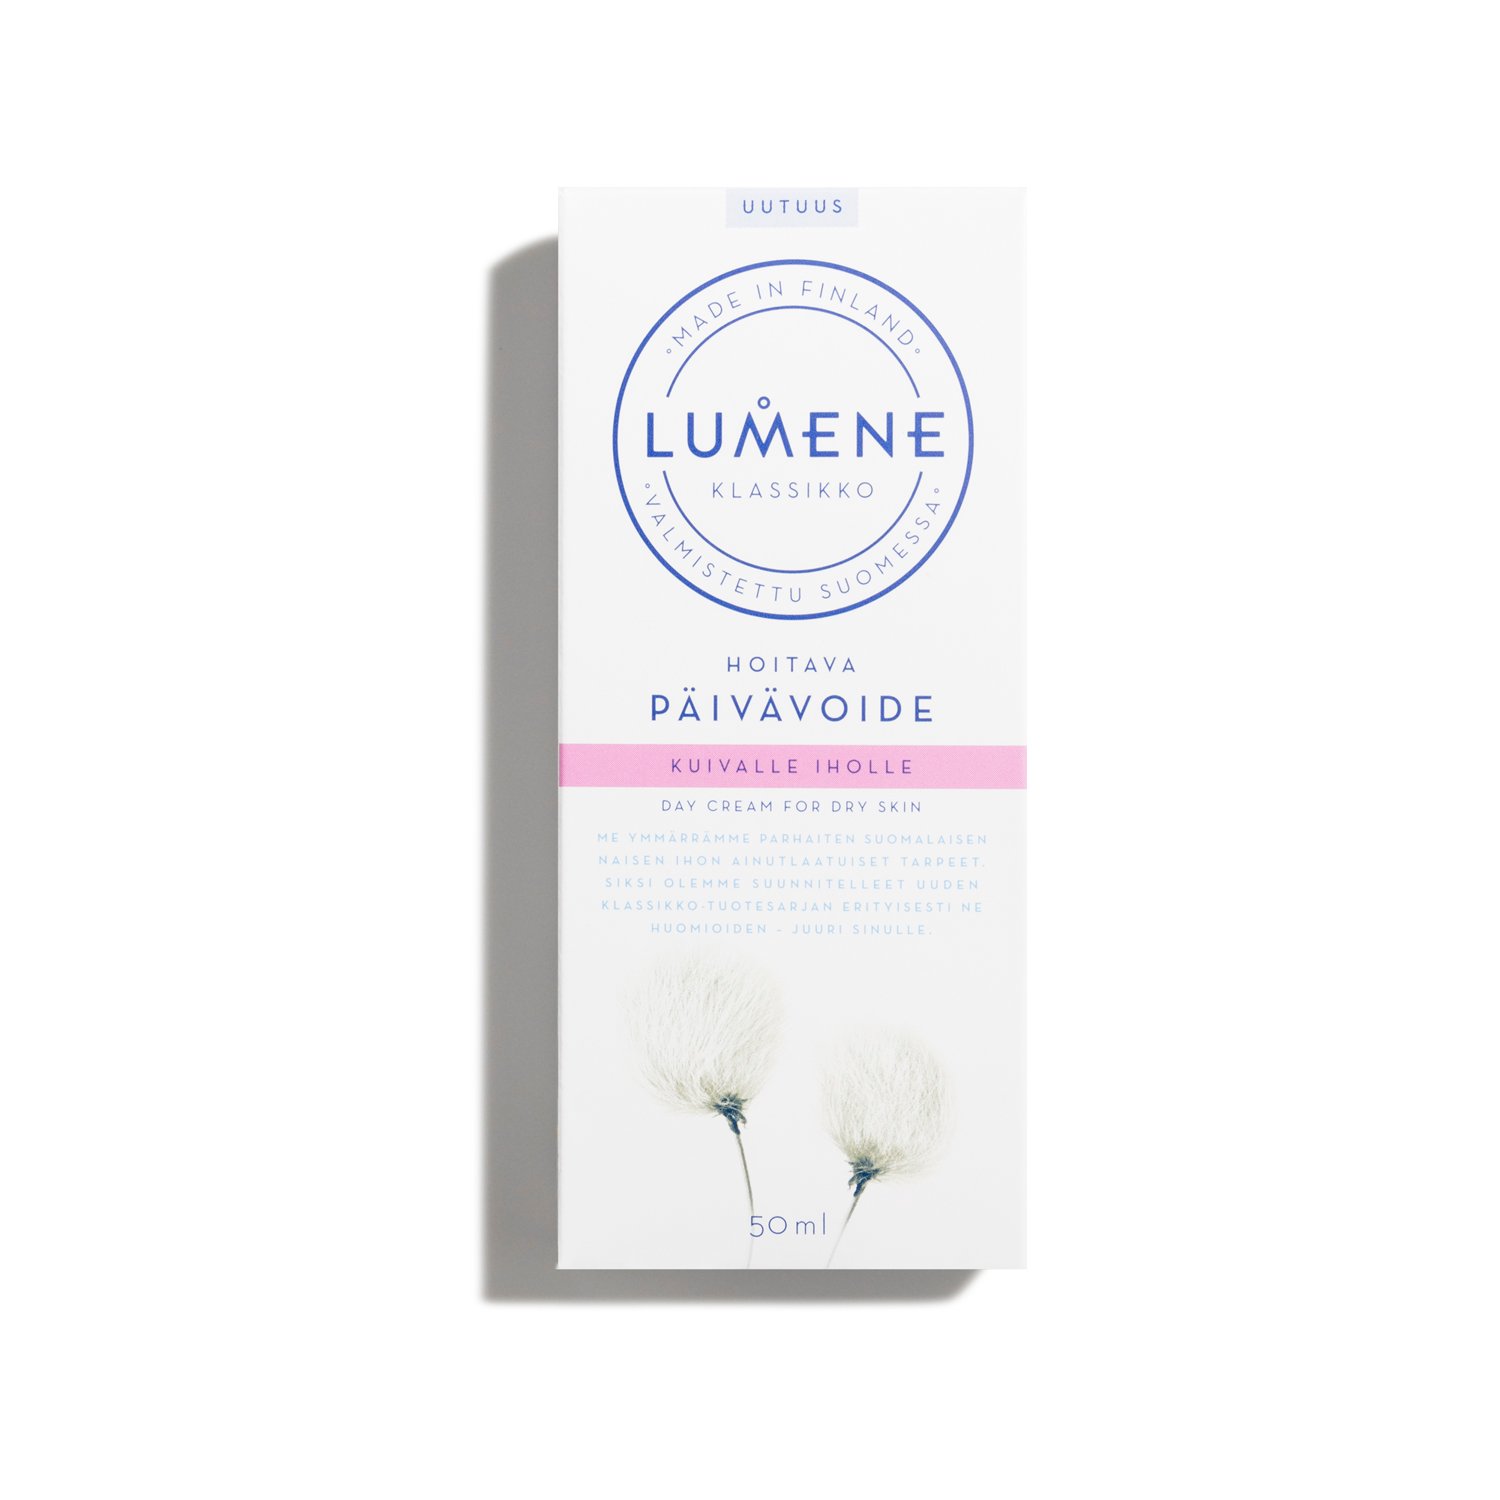 Дневной питательный крем для сухой кожи Lumene Klassikko, 50 мл (8000017593390) - фото 2